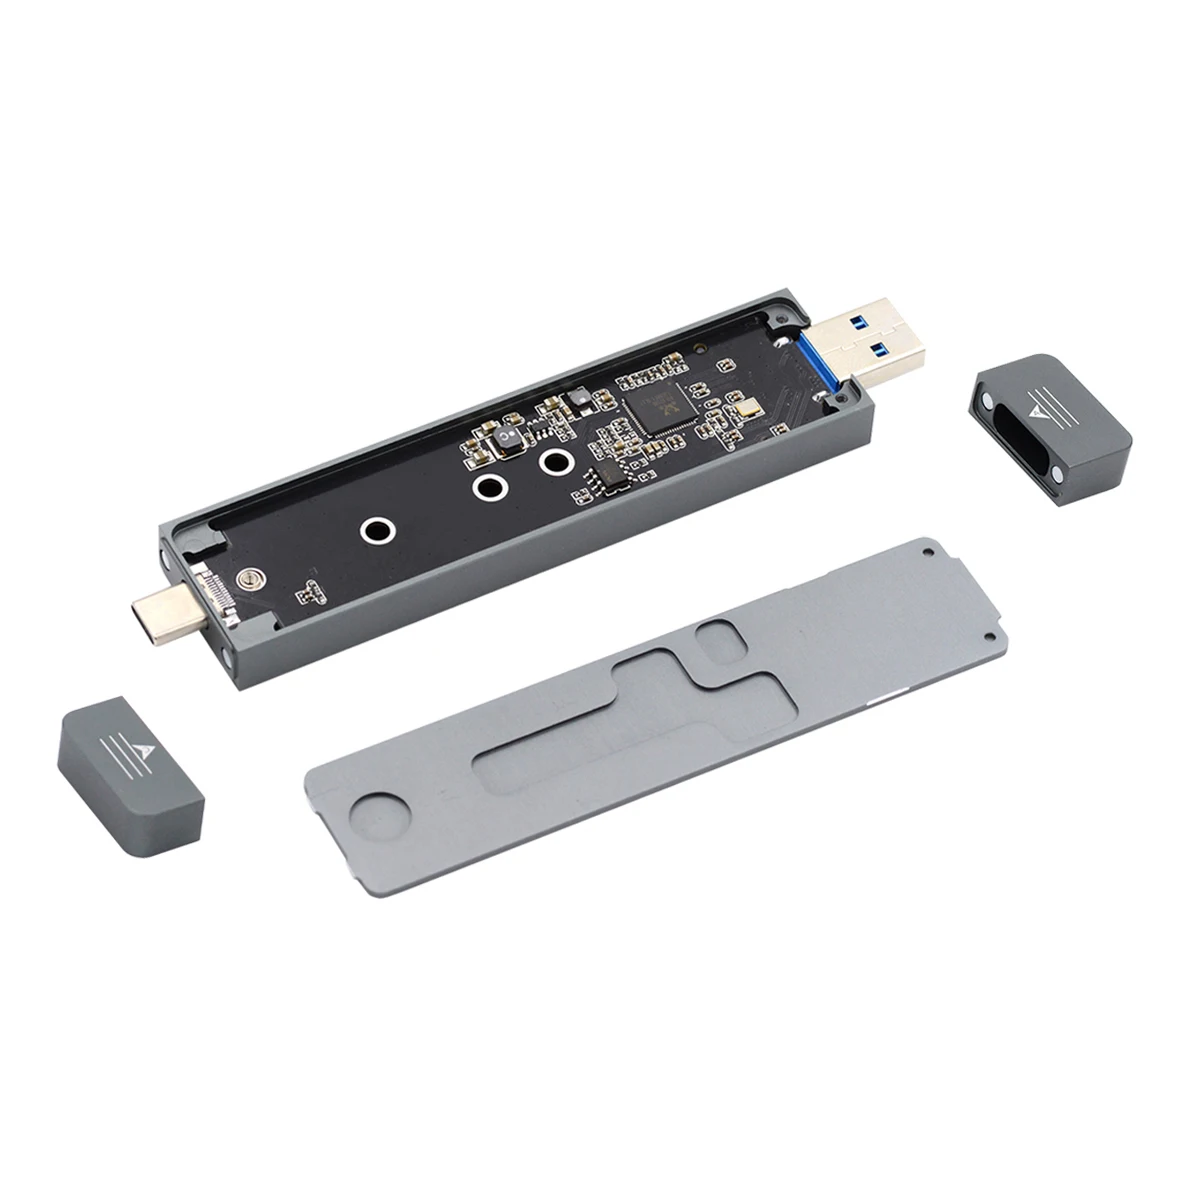 

Адаптер Xiwai 2280 мм M.2 на USB, NVME M-Key M.2 NGFF SATA SSD на USB 3.0 Тип A и Тип C комбинированный адаптер для чехла PCBA RTL9210B чипсет